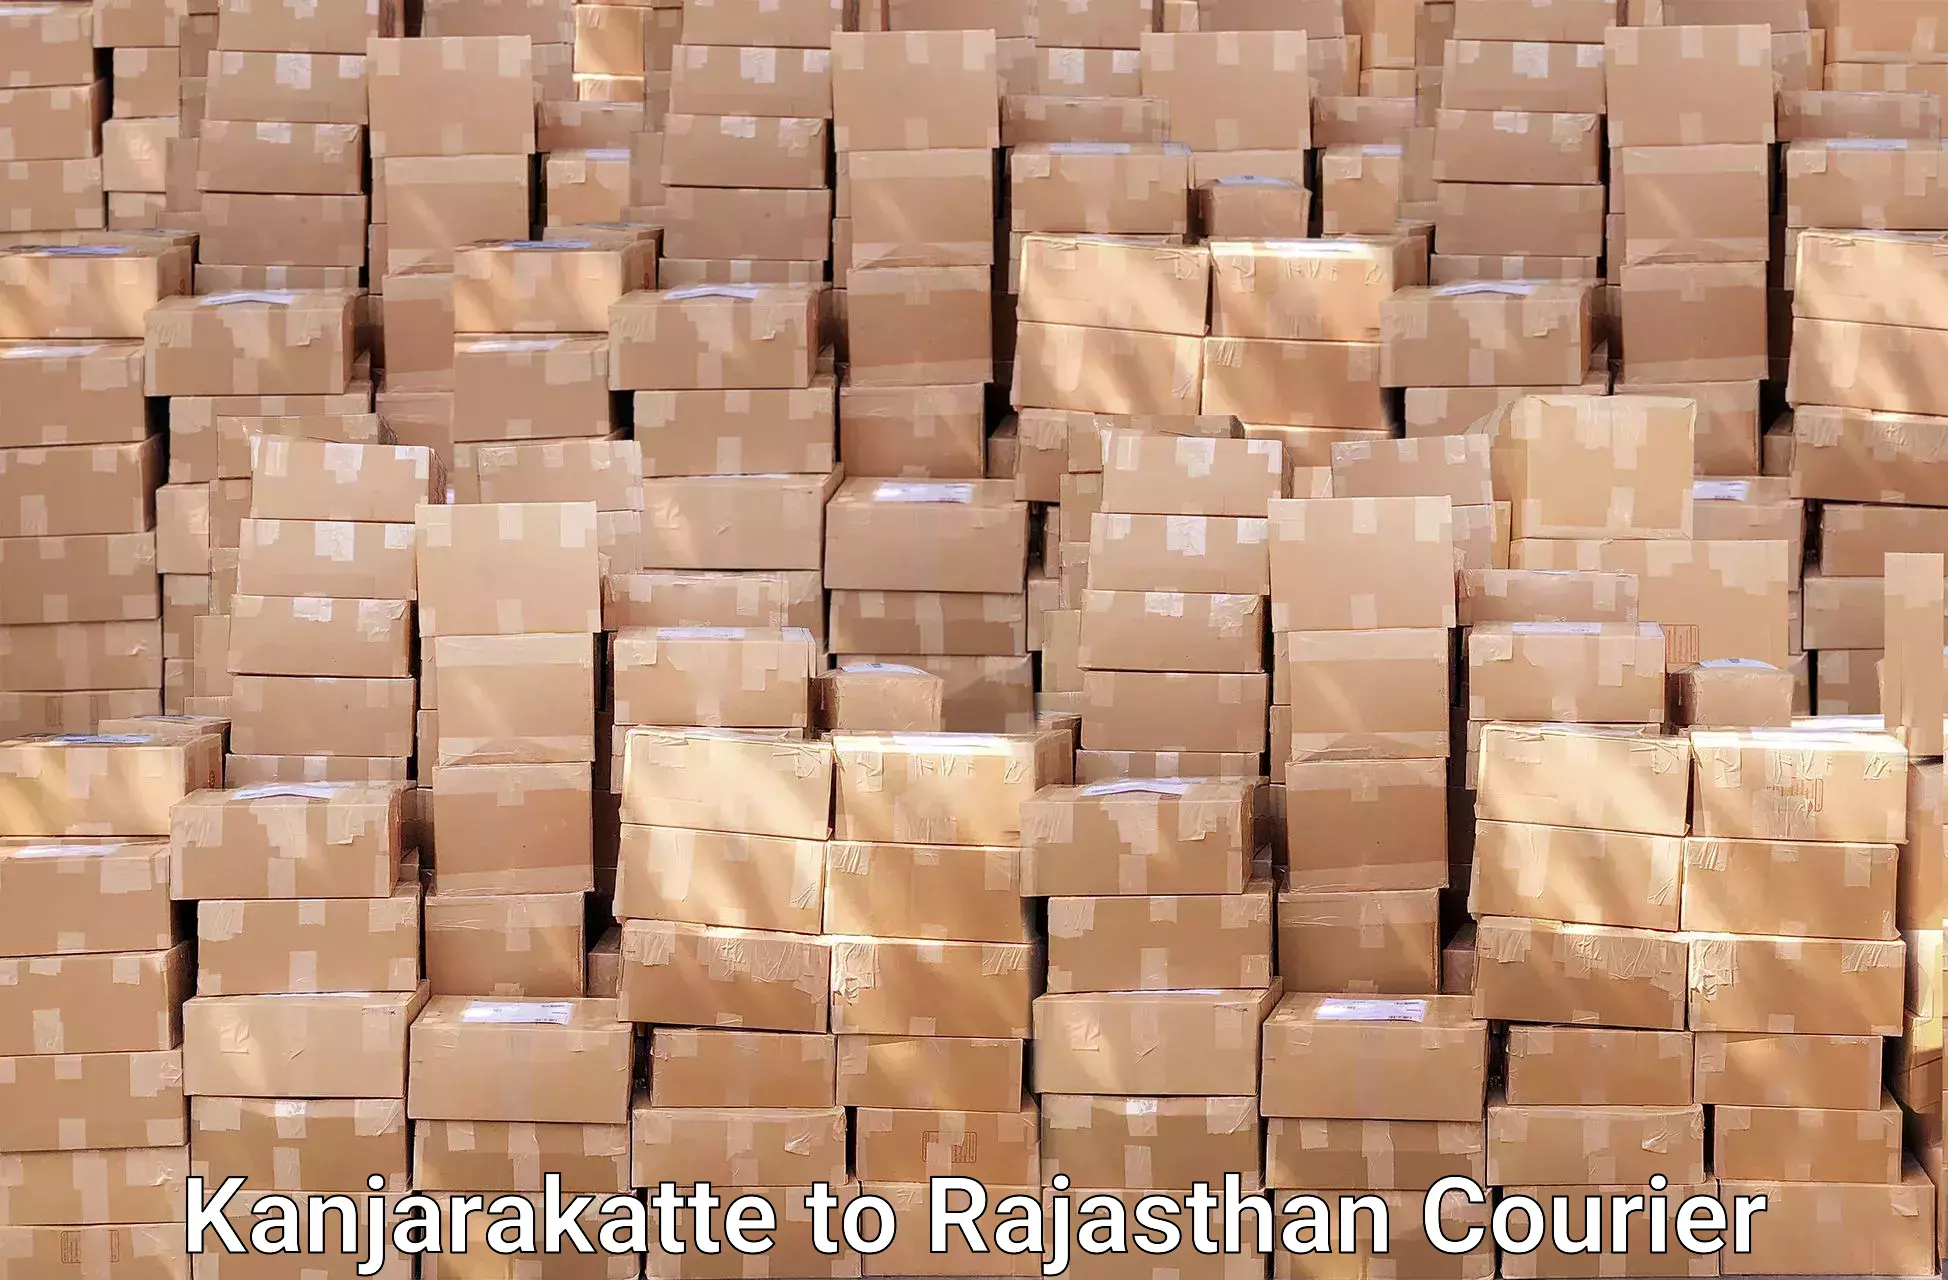 Efficient packing and moving Kanjarakatte to Sangaria